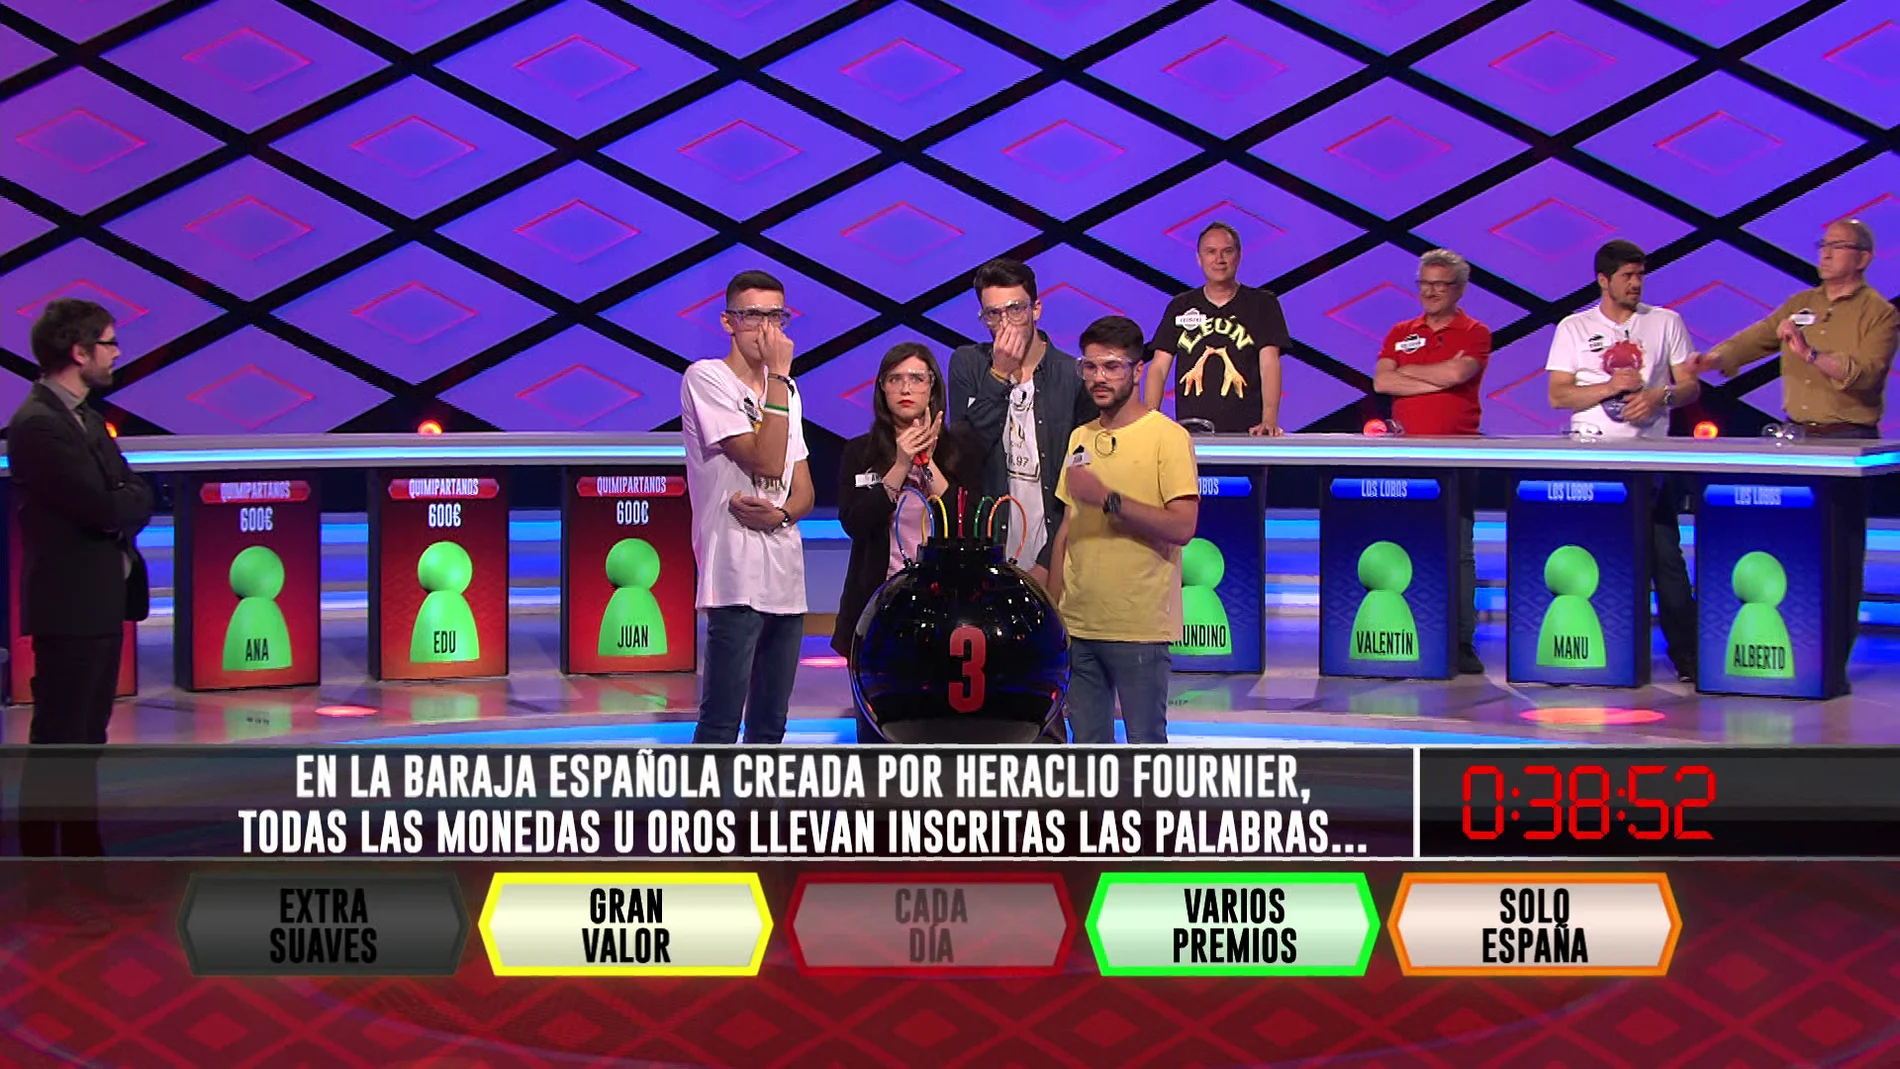 Las dudas se apoderan de los 'Quimipartanos' en una complicada pregunta sobre la baraja española en '¡Boom!'